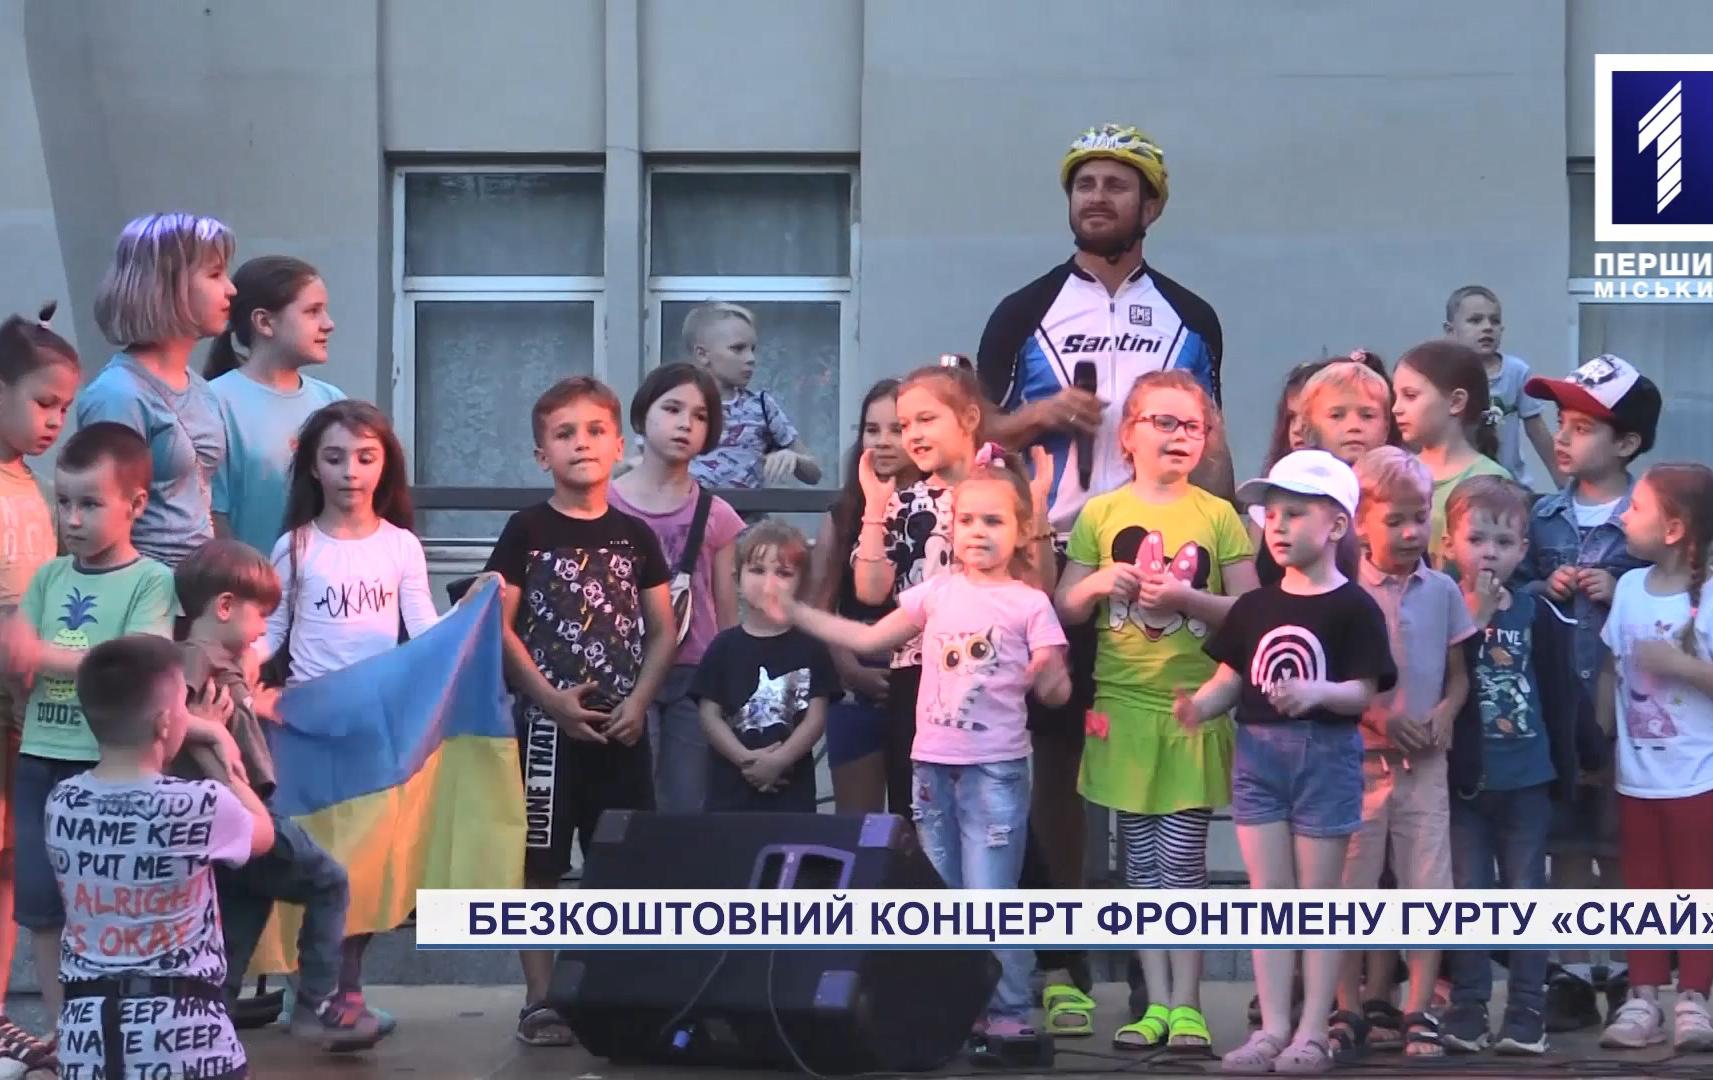 Лідер гурту СКАЙ дав концерт у Кривому Розі під час всеукраїнського велотуру